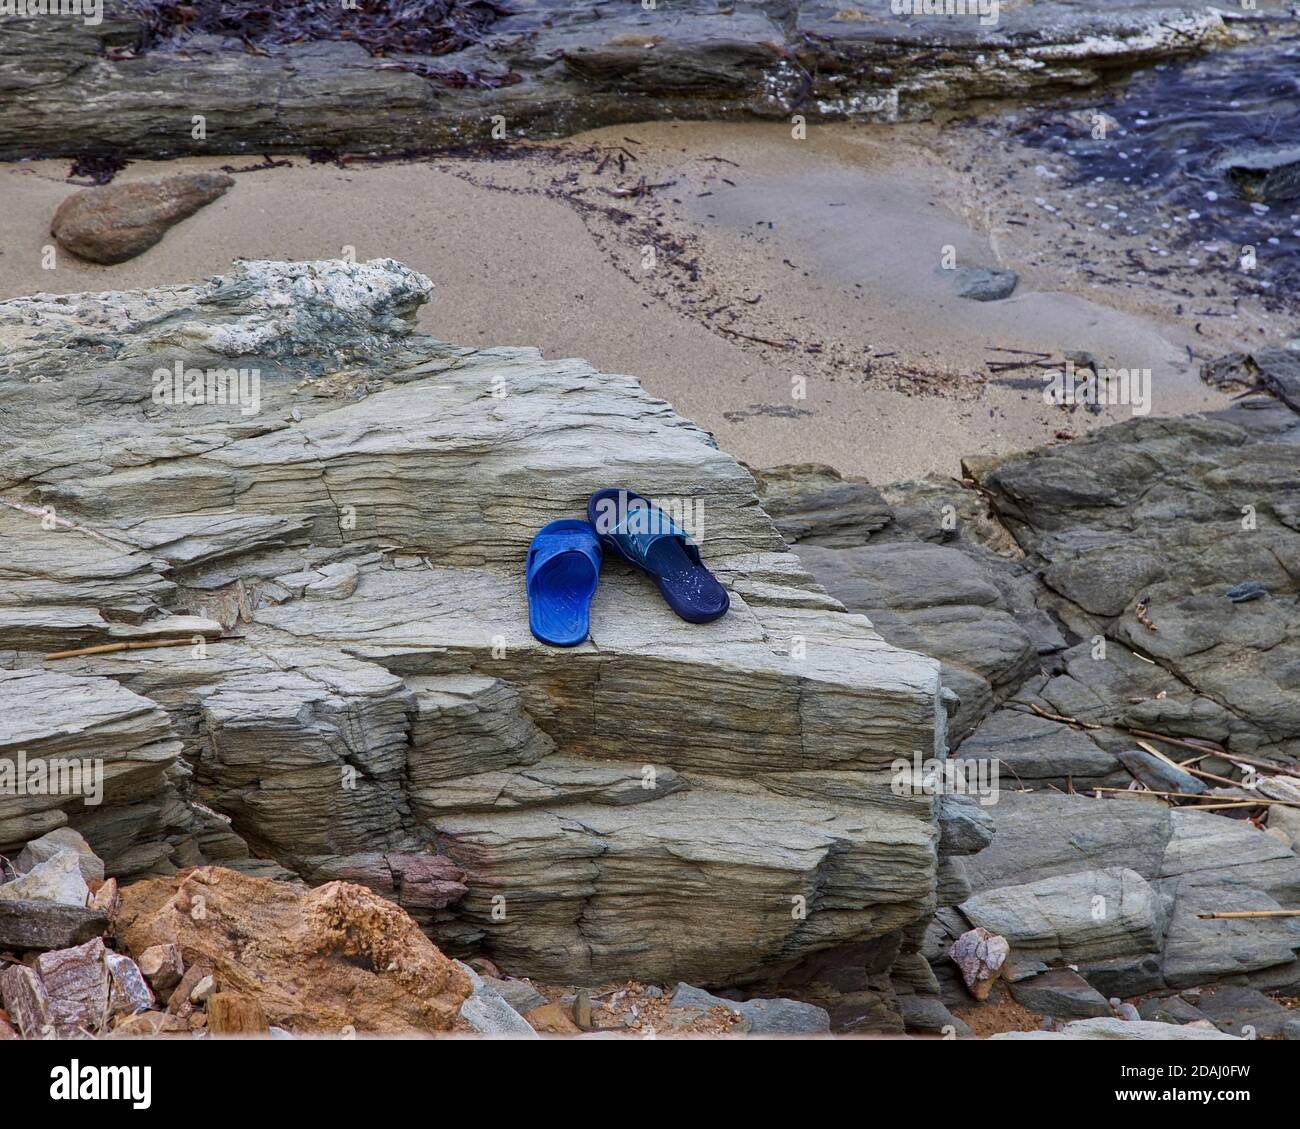 Paire impaire. Copier l'espace. Une mauvaise paire de sandales de plage en plastique bleu laissées sur un rocher par le bord de mer. Image de stock. Banque D'Images